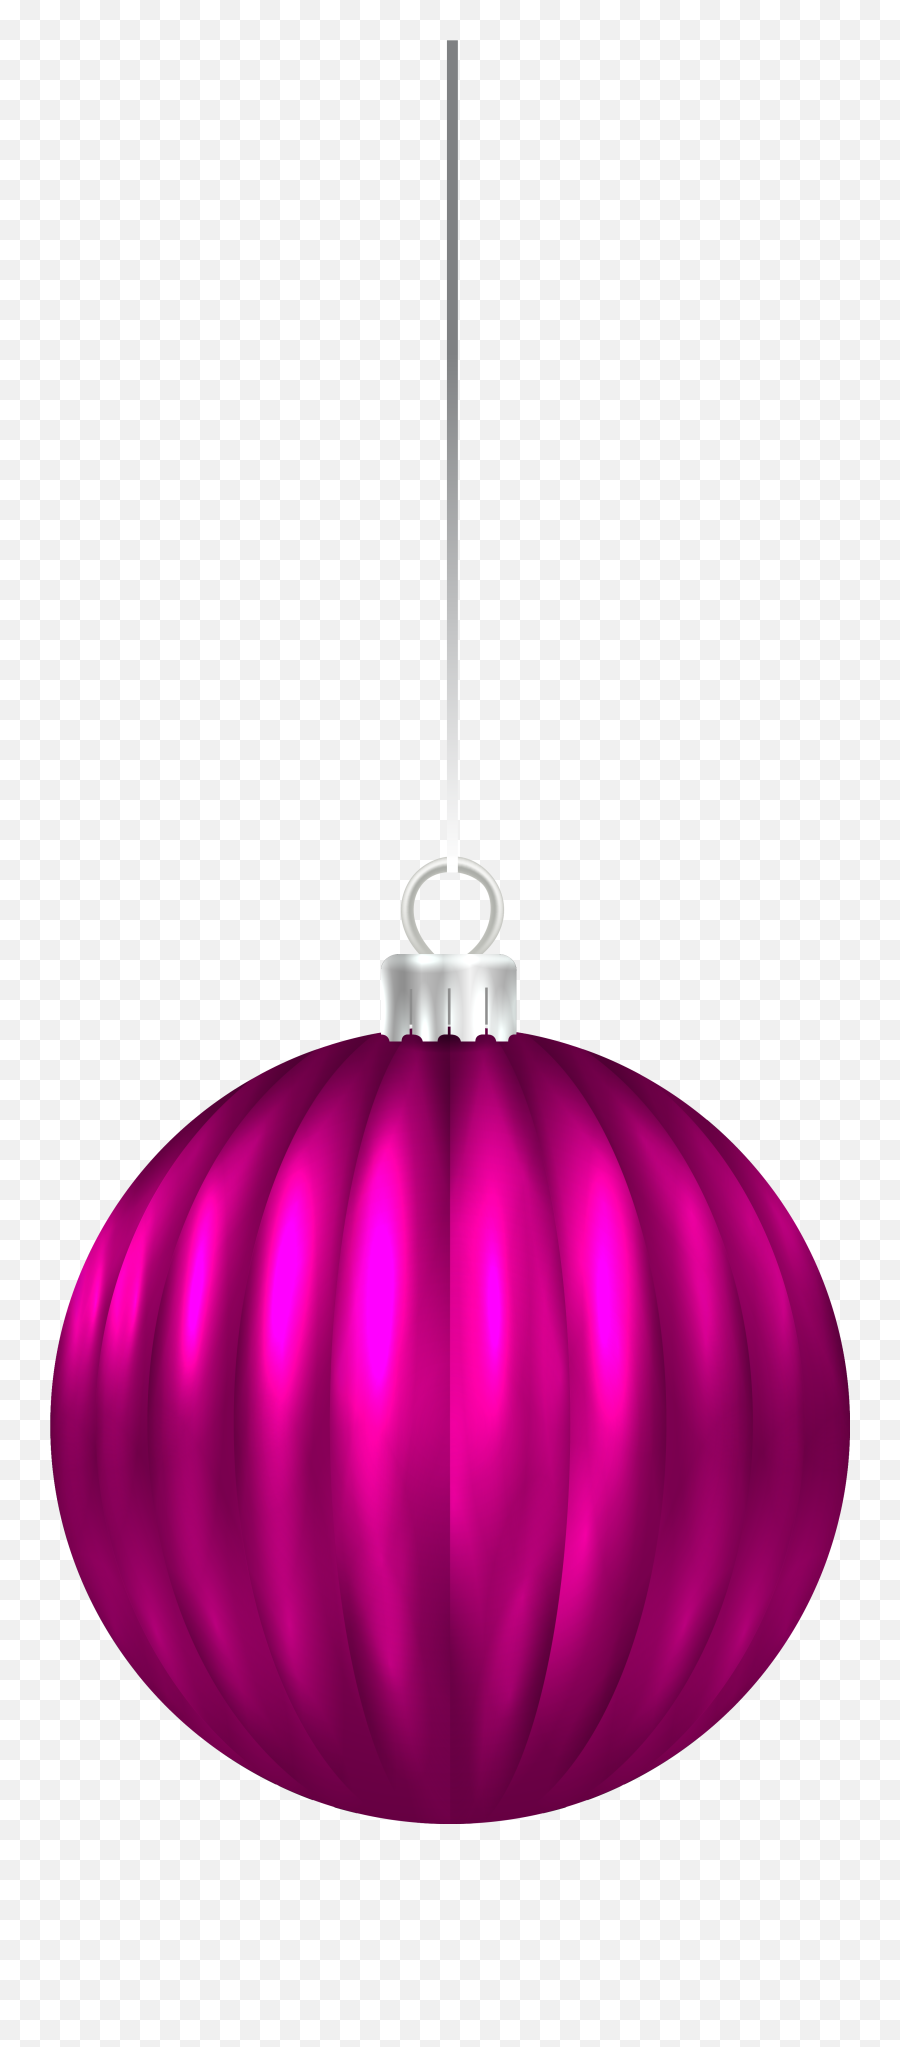 Download Hd Pink Ornament Clipart Vector Transparent - Pink Christmas Ornaments Transparent Emoji,Christmas Ornament Clipart